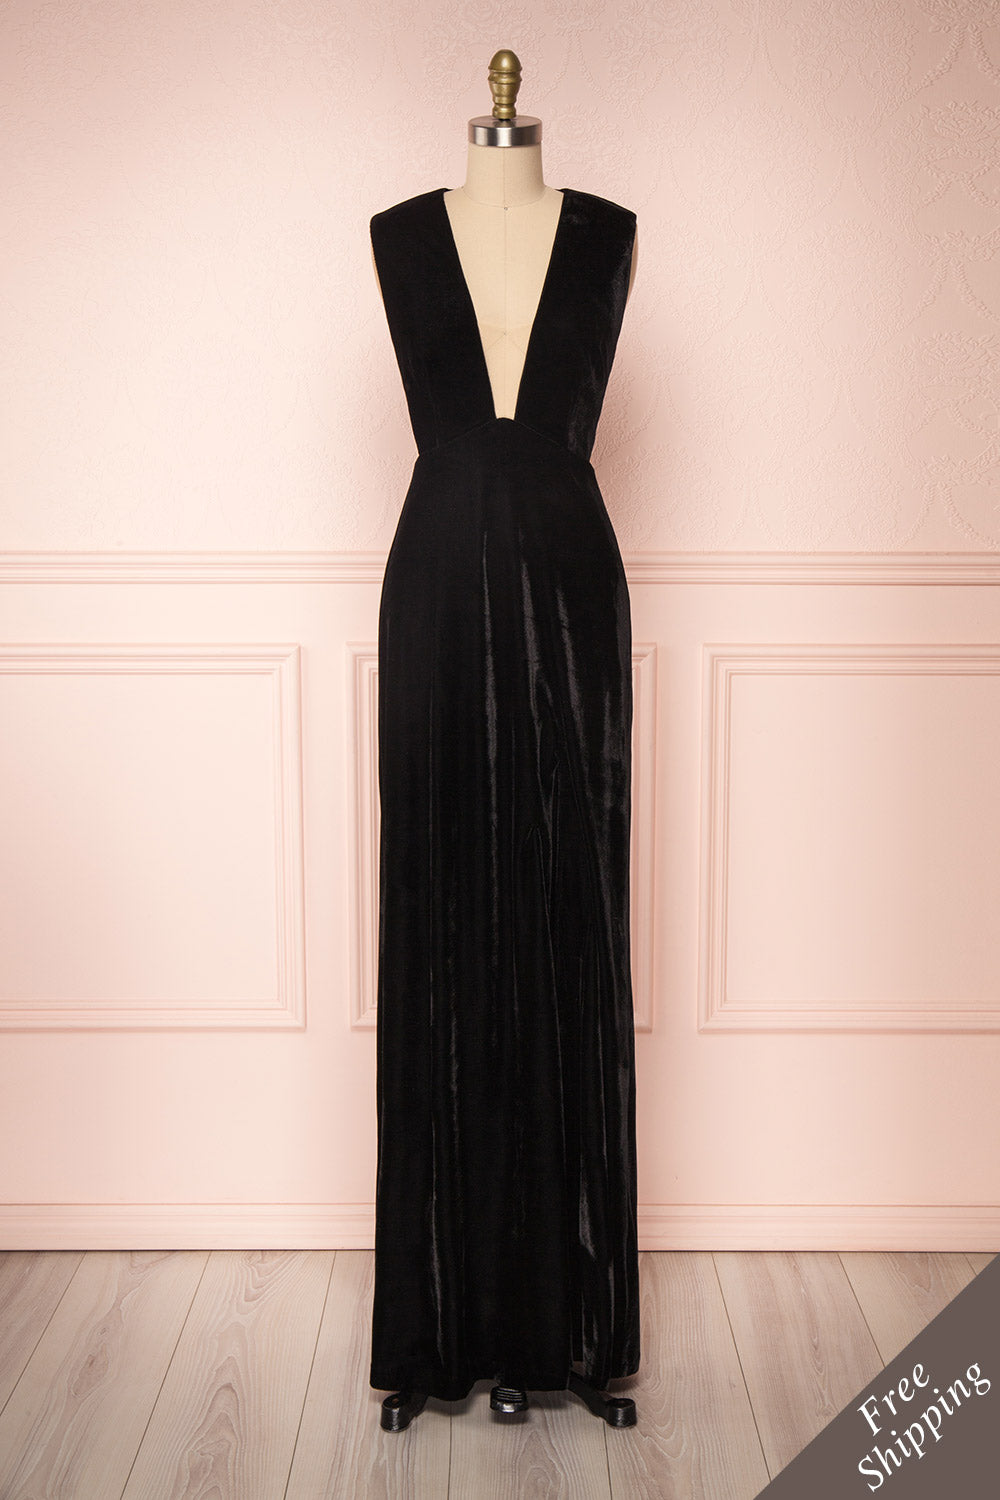 Eileen Black Velvet A-Line Gown | Boutique 1861 front view 